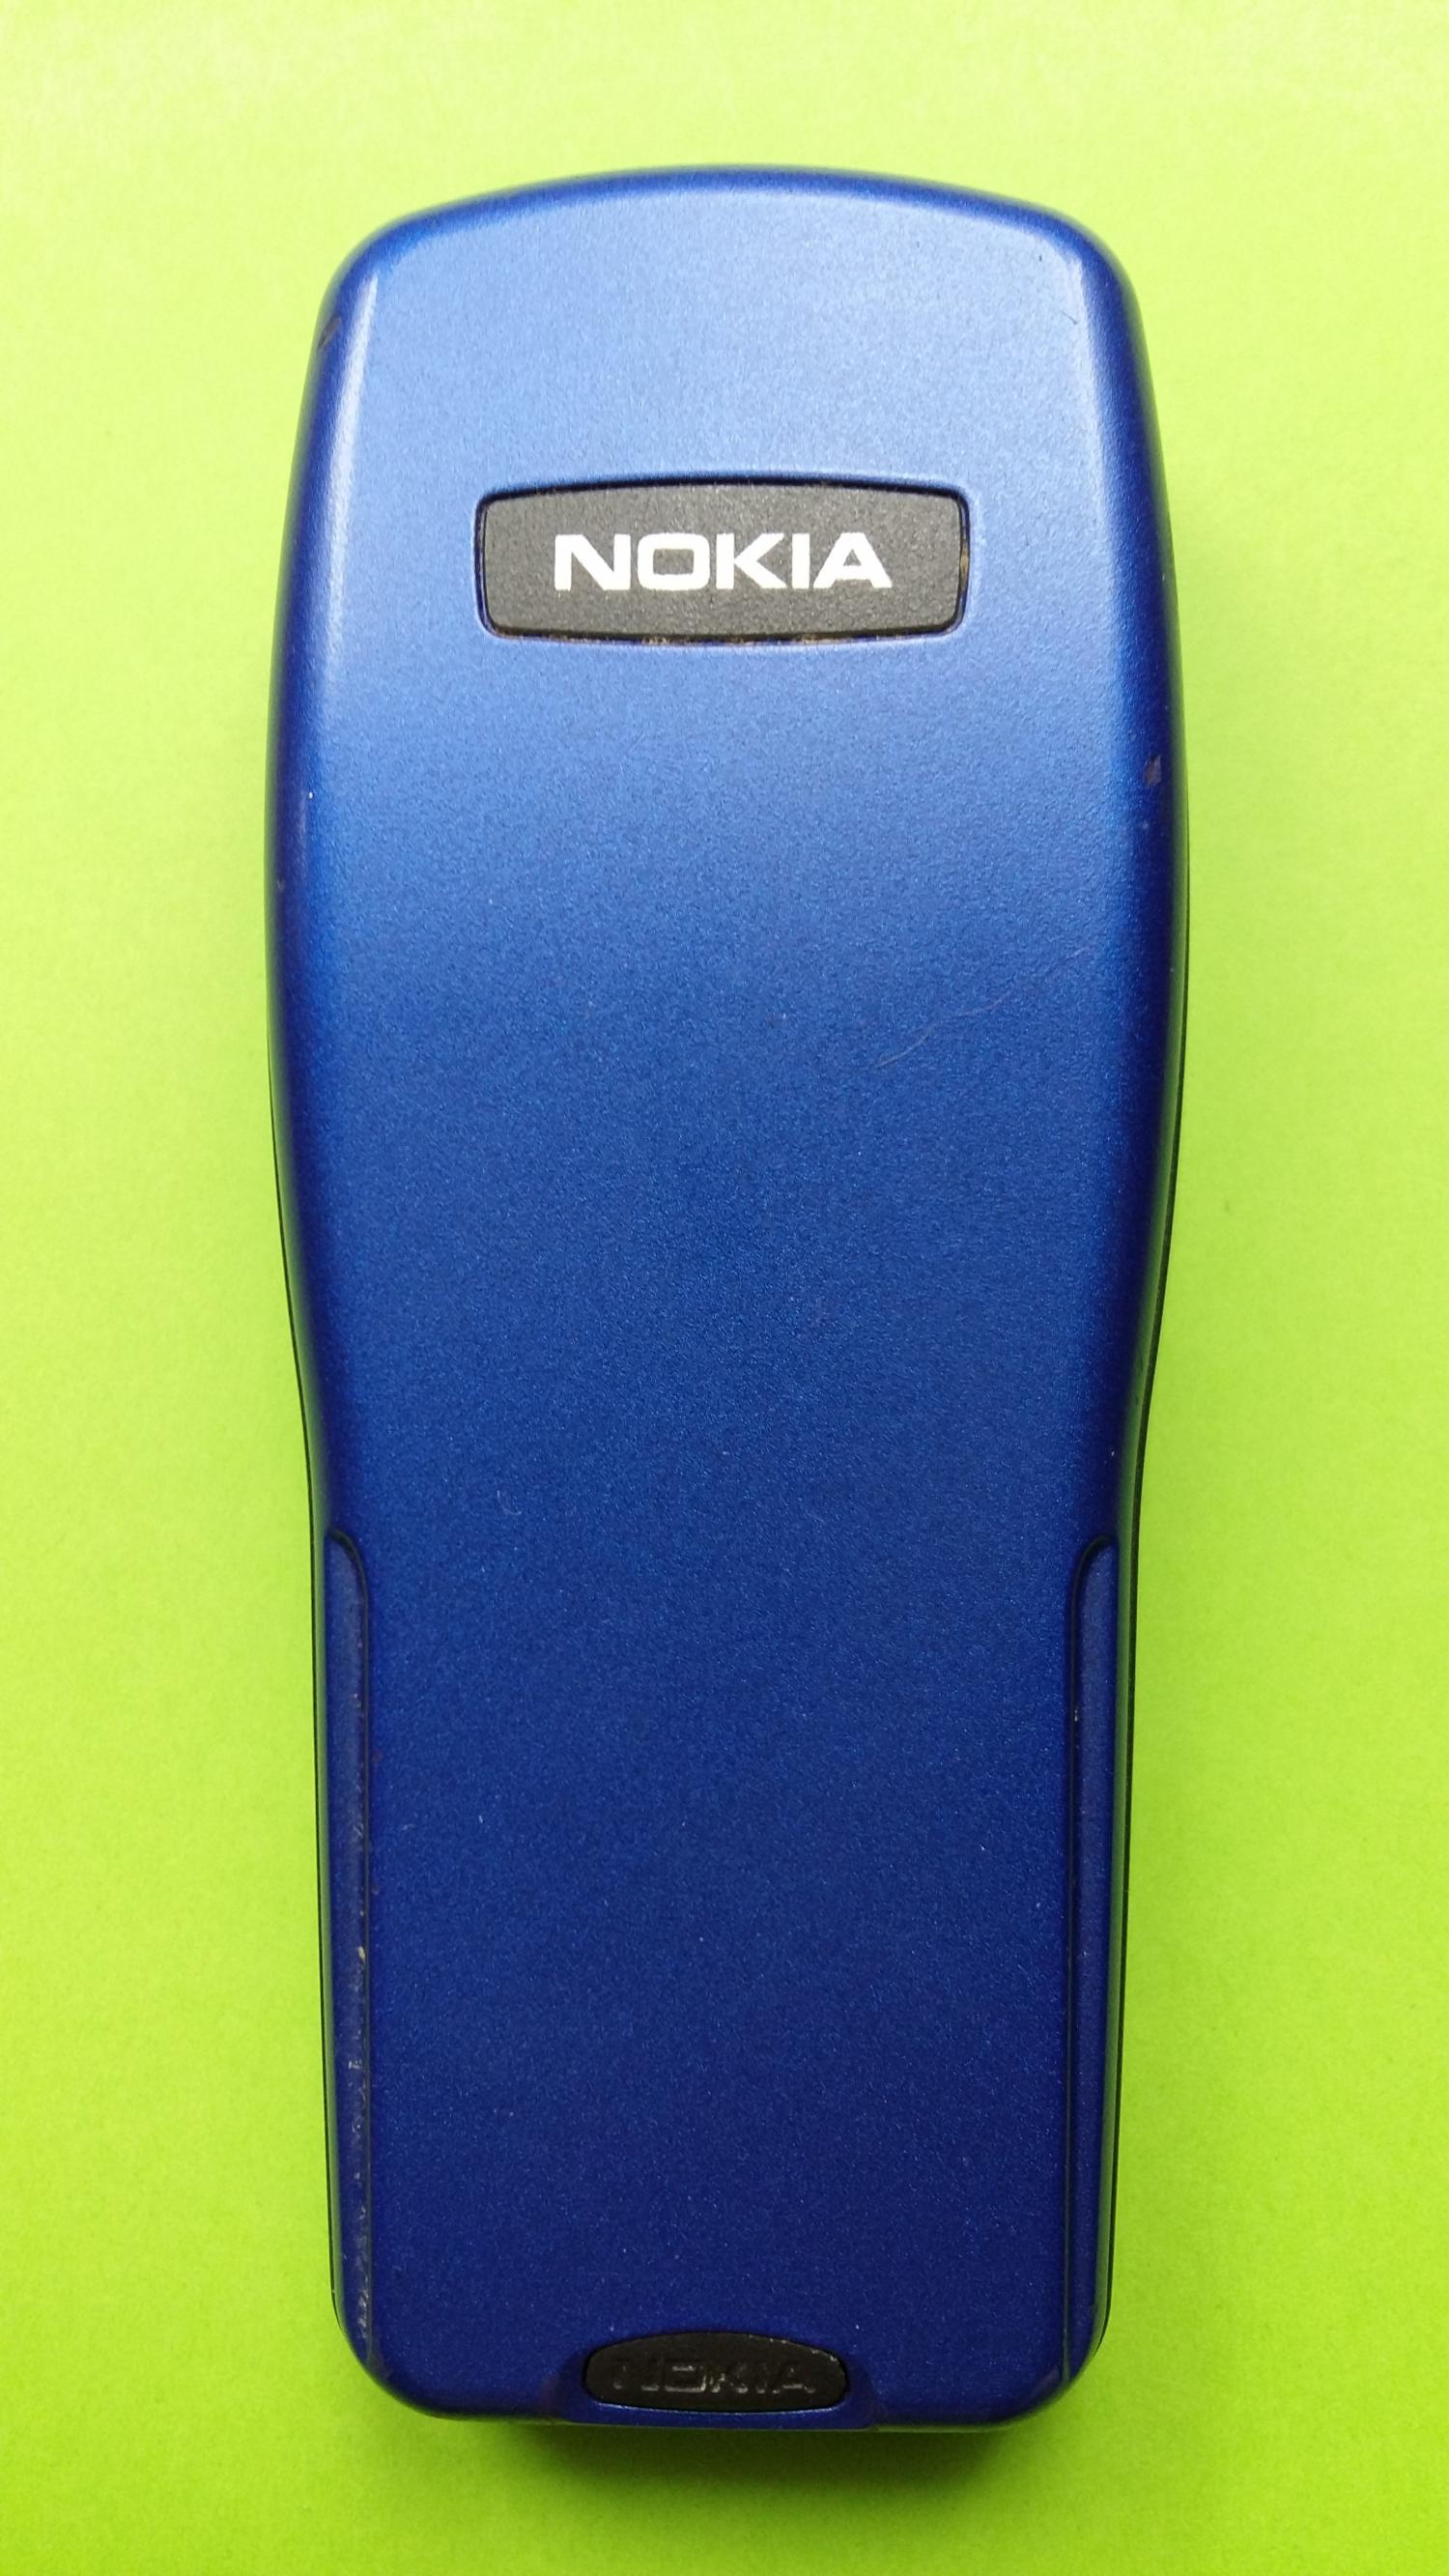 image-7303071-Nokia 3210 (29)2.jpg